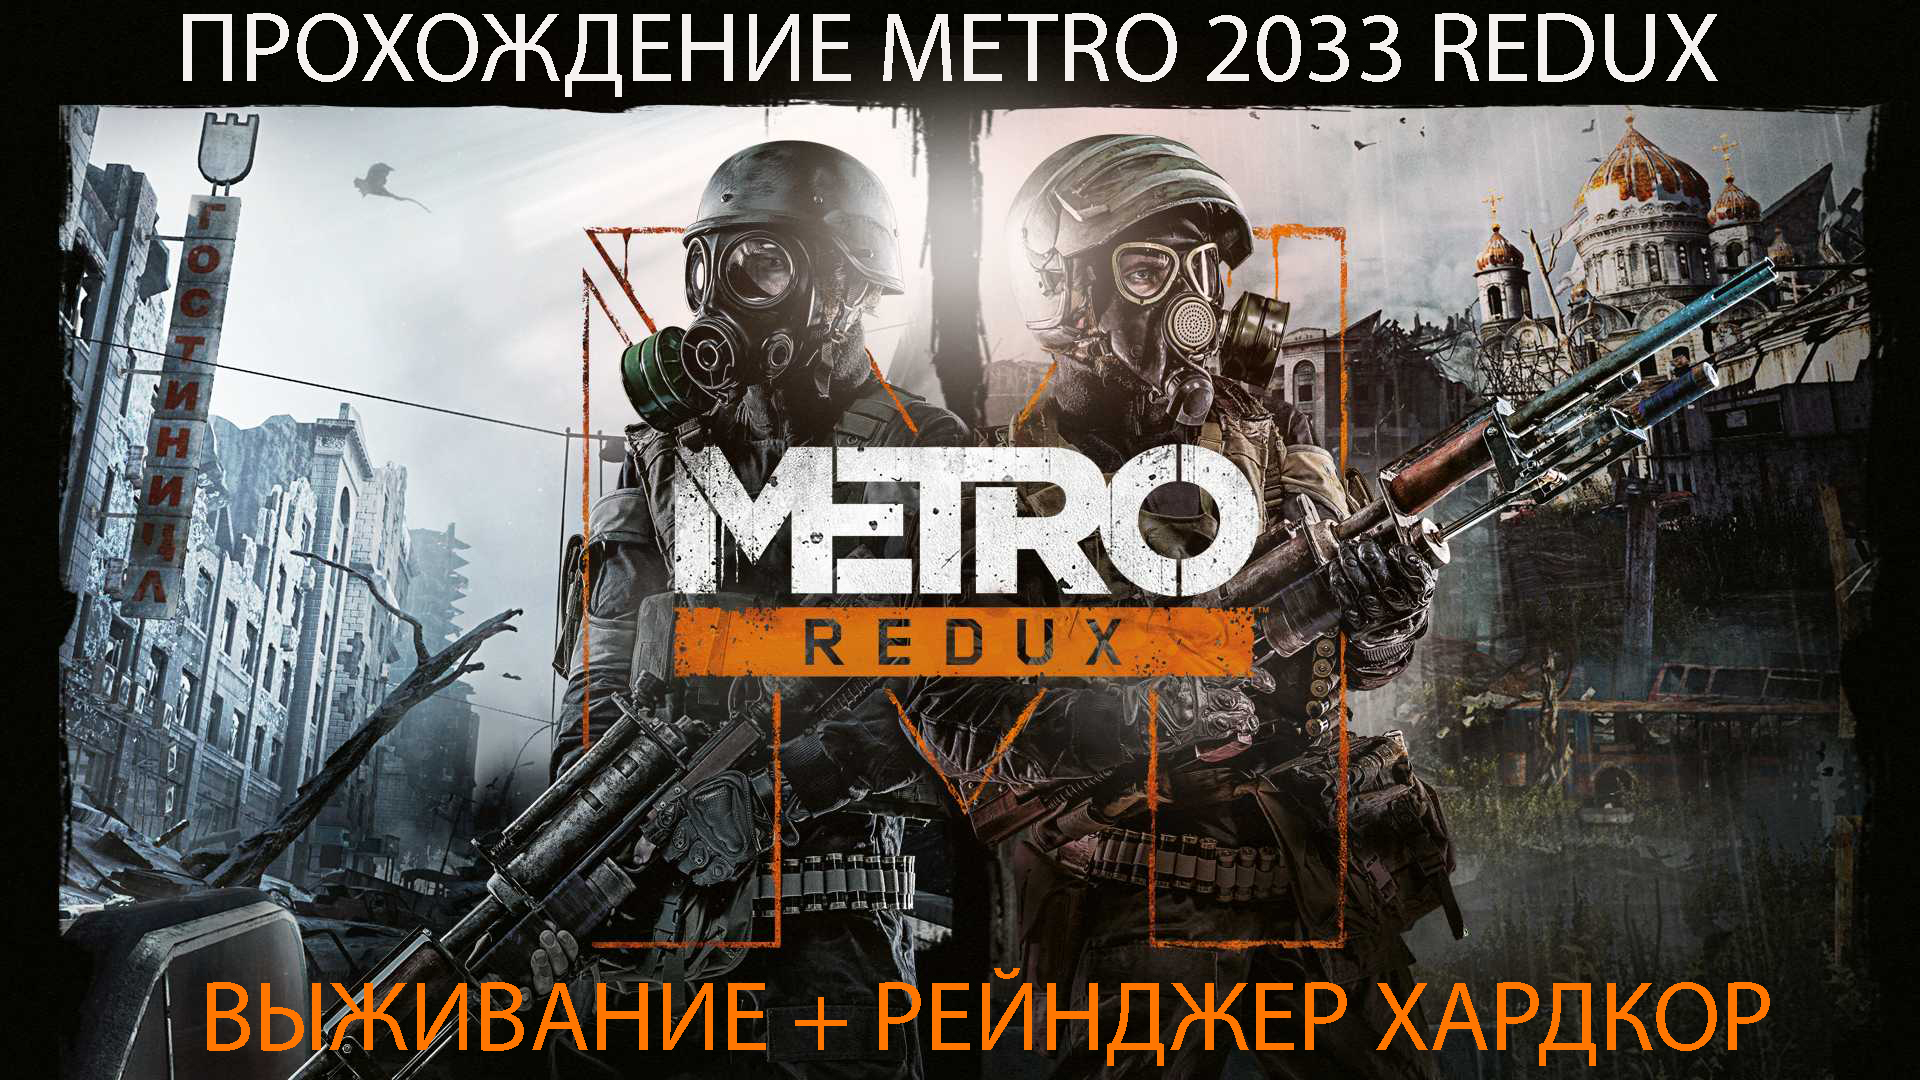 Прохождение Metro 2033 Redux VIII - Форпост, Черная, Полис, Облом - Рейнджер Хардкор.mp4